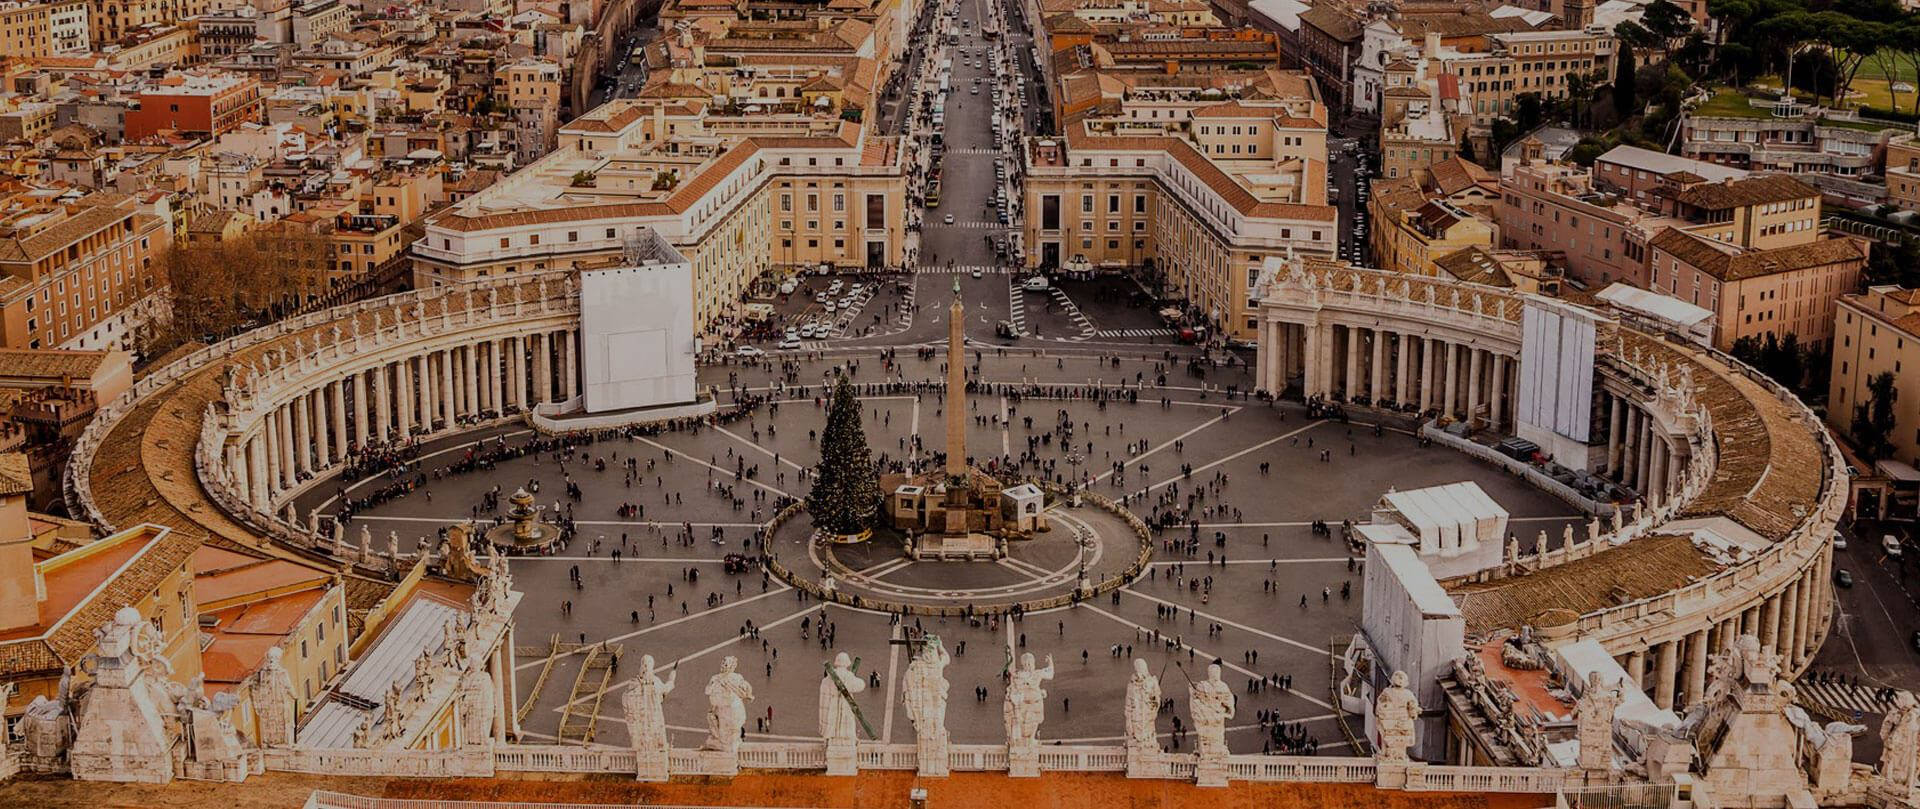 Dark St. Peter's Square In Vatican Wallpaper